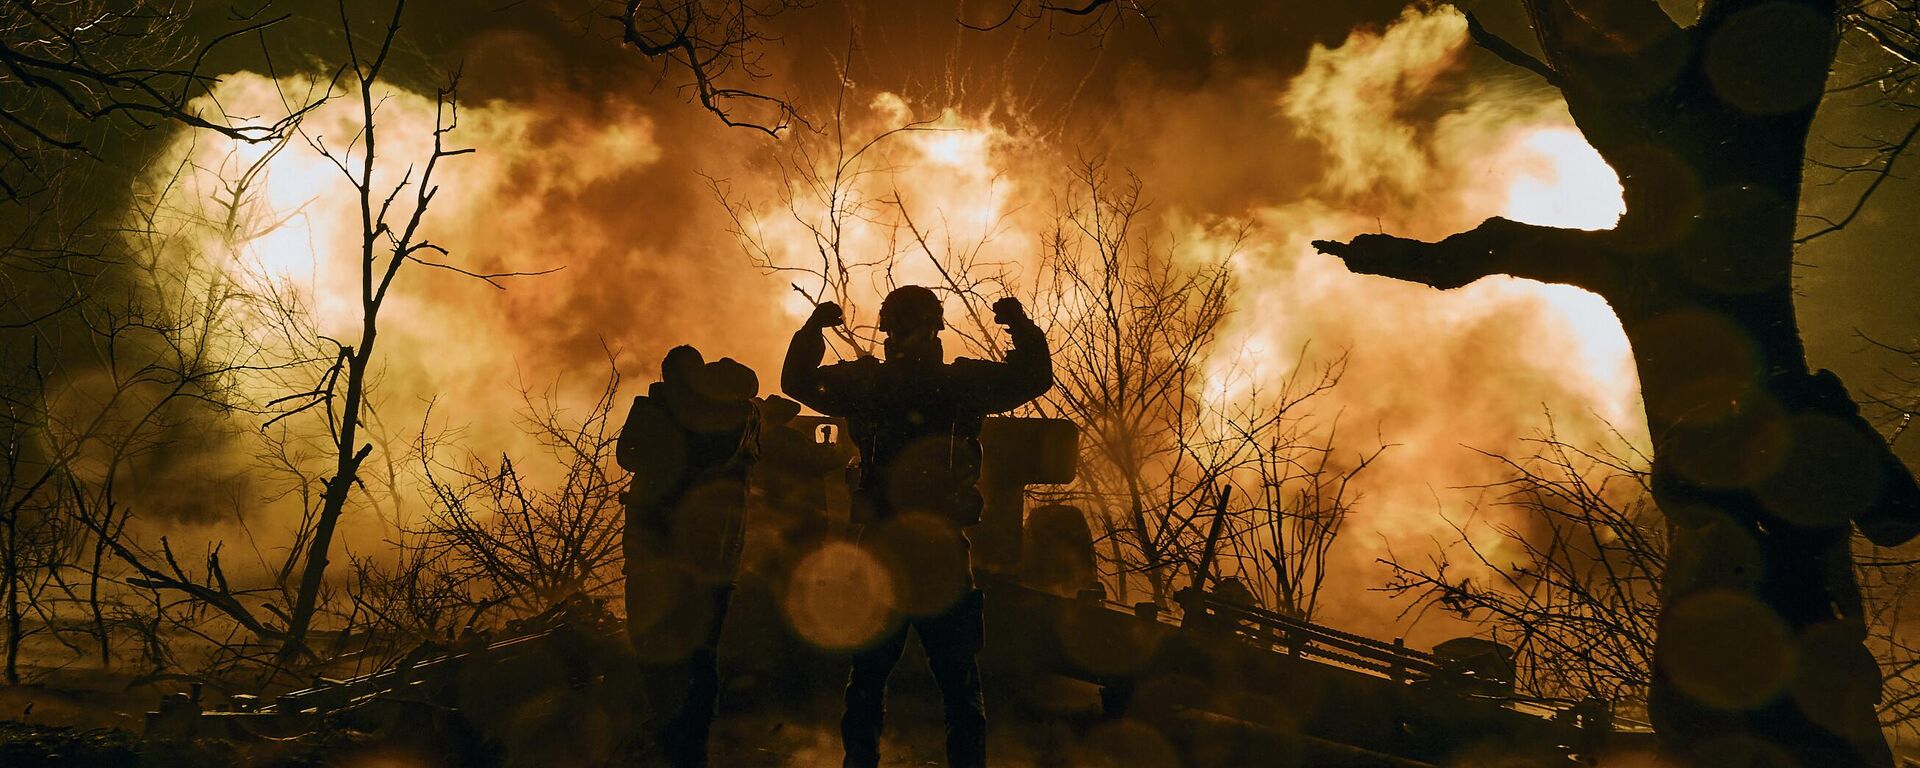  جنود أوكرانيون يطلقون نيران المدفعية على مواقع روسية بالقرب من باخموت في منطقة دونيتسك، 20 نوفمبر 2022.  - سبوتنيك عربي, 1920, 04.08.2023